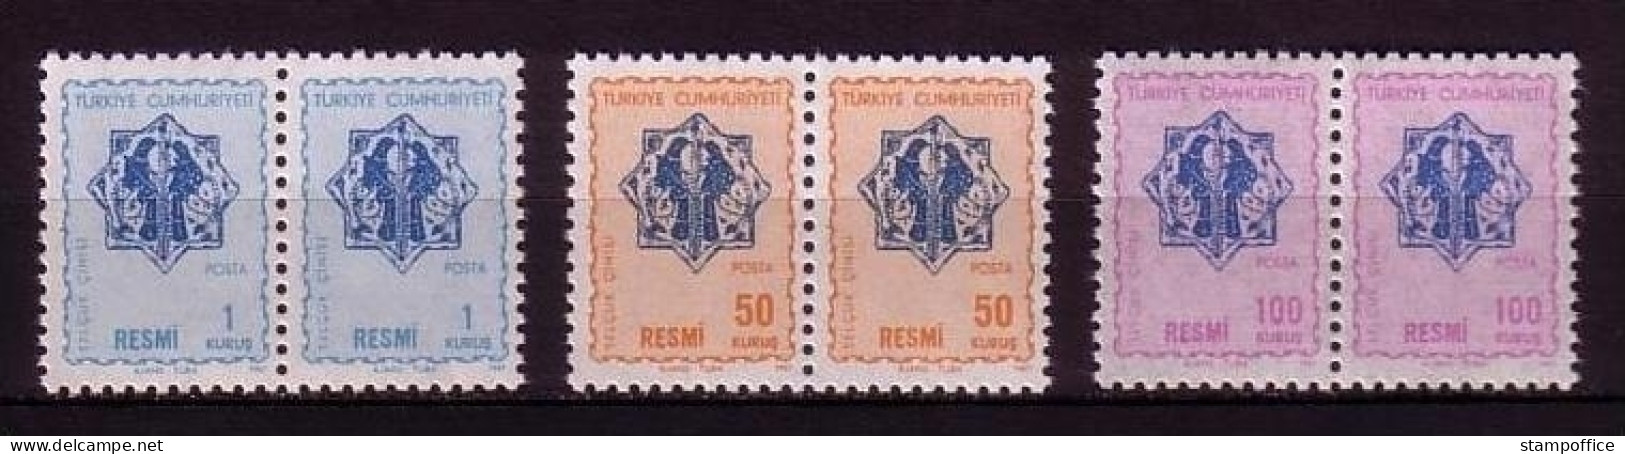 TÜRKEI DIENSTMARKEN MI-NR. 109-111 POSTFRISCH(MINT) Pärchen ORNAMENTE - Dienstzegels